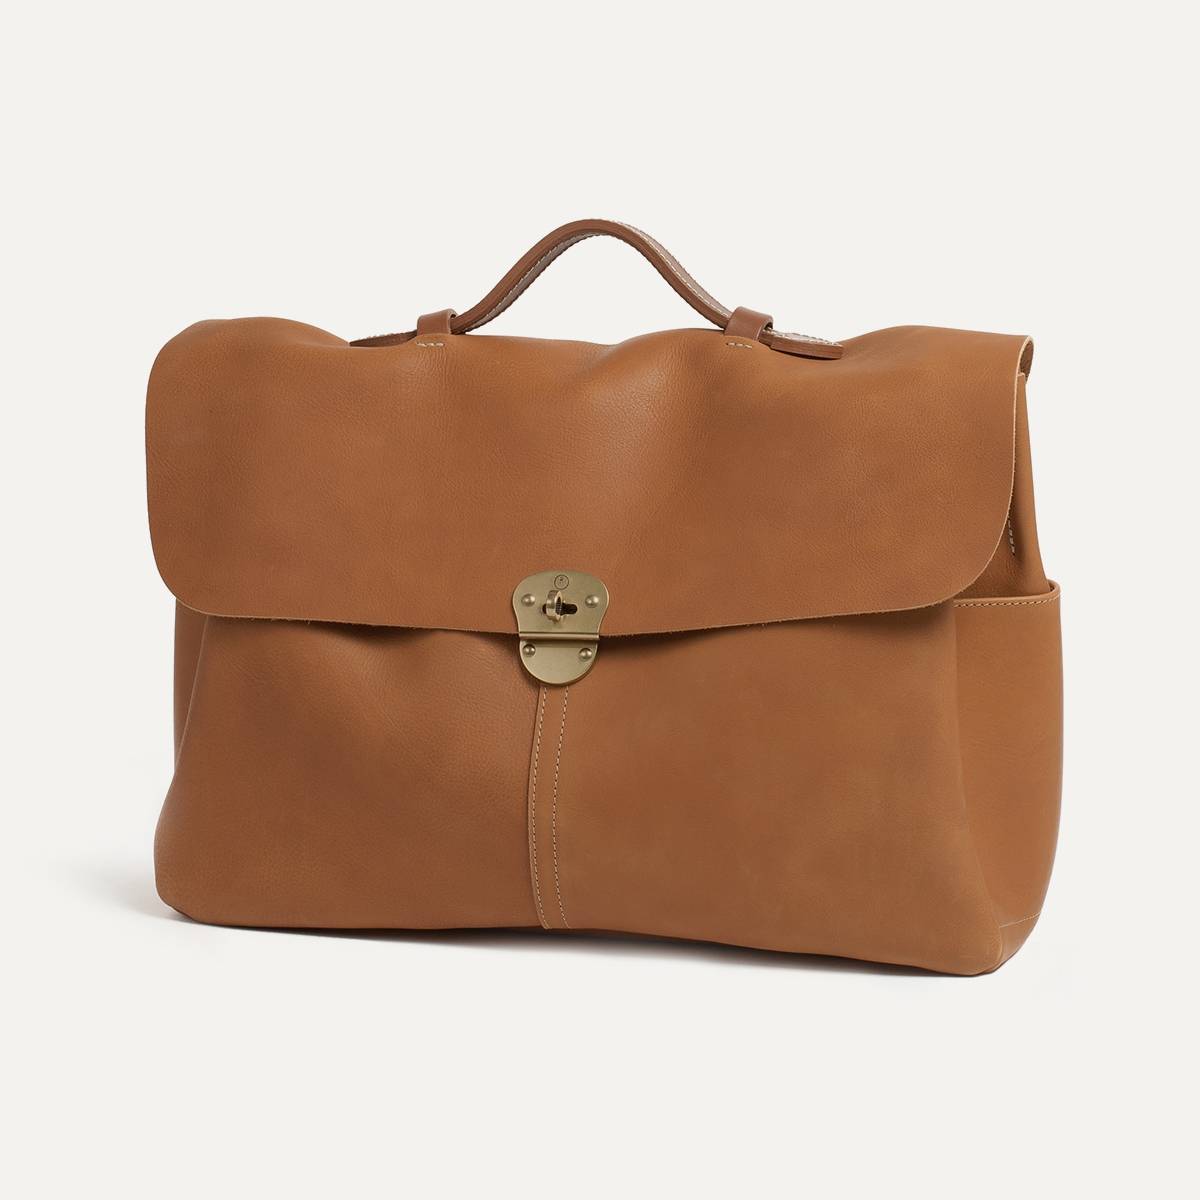 Business bag Charles for men - satchel bag Caramel | Bleu de chauffe